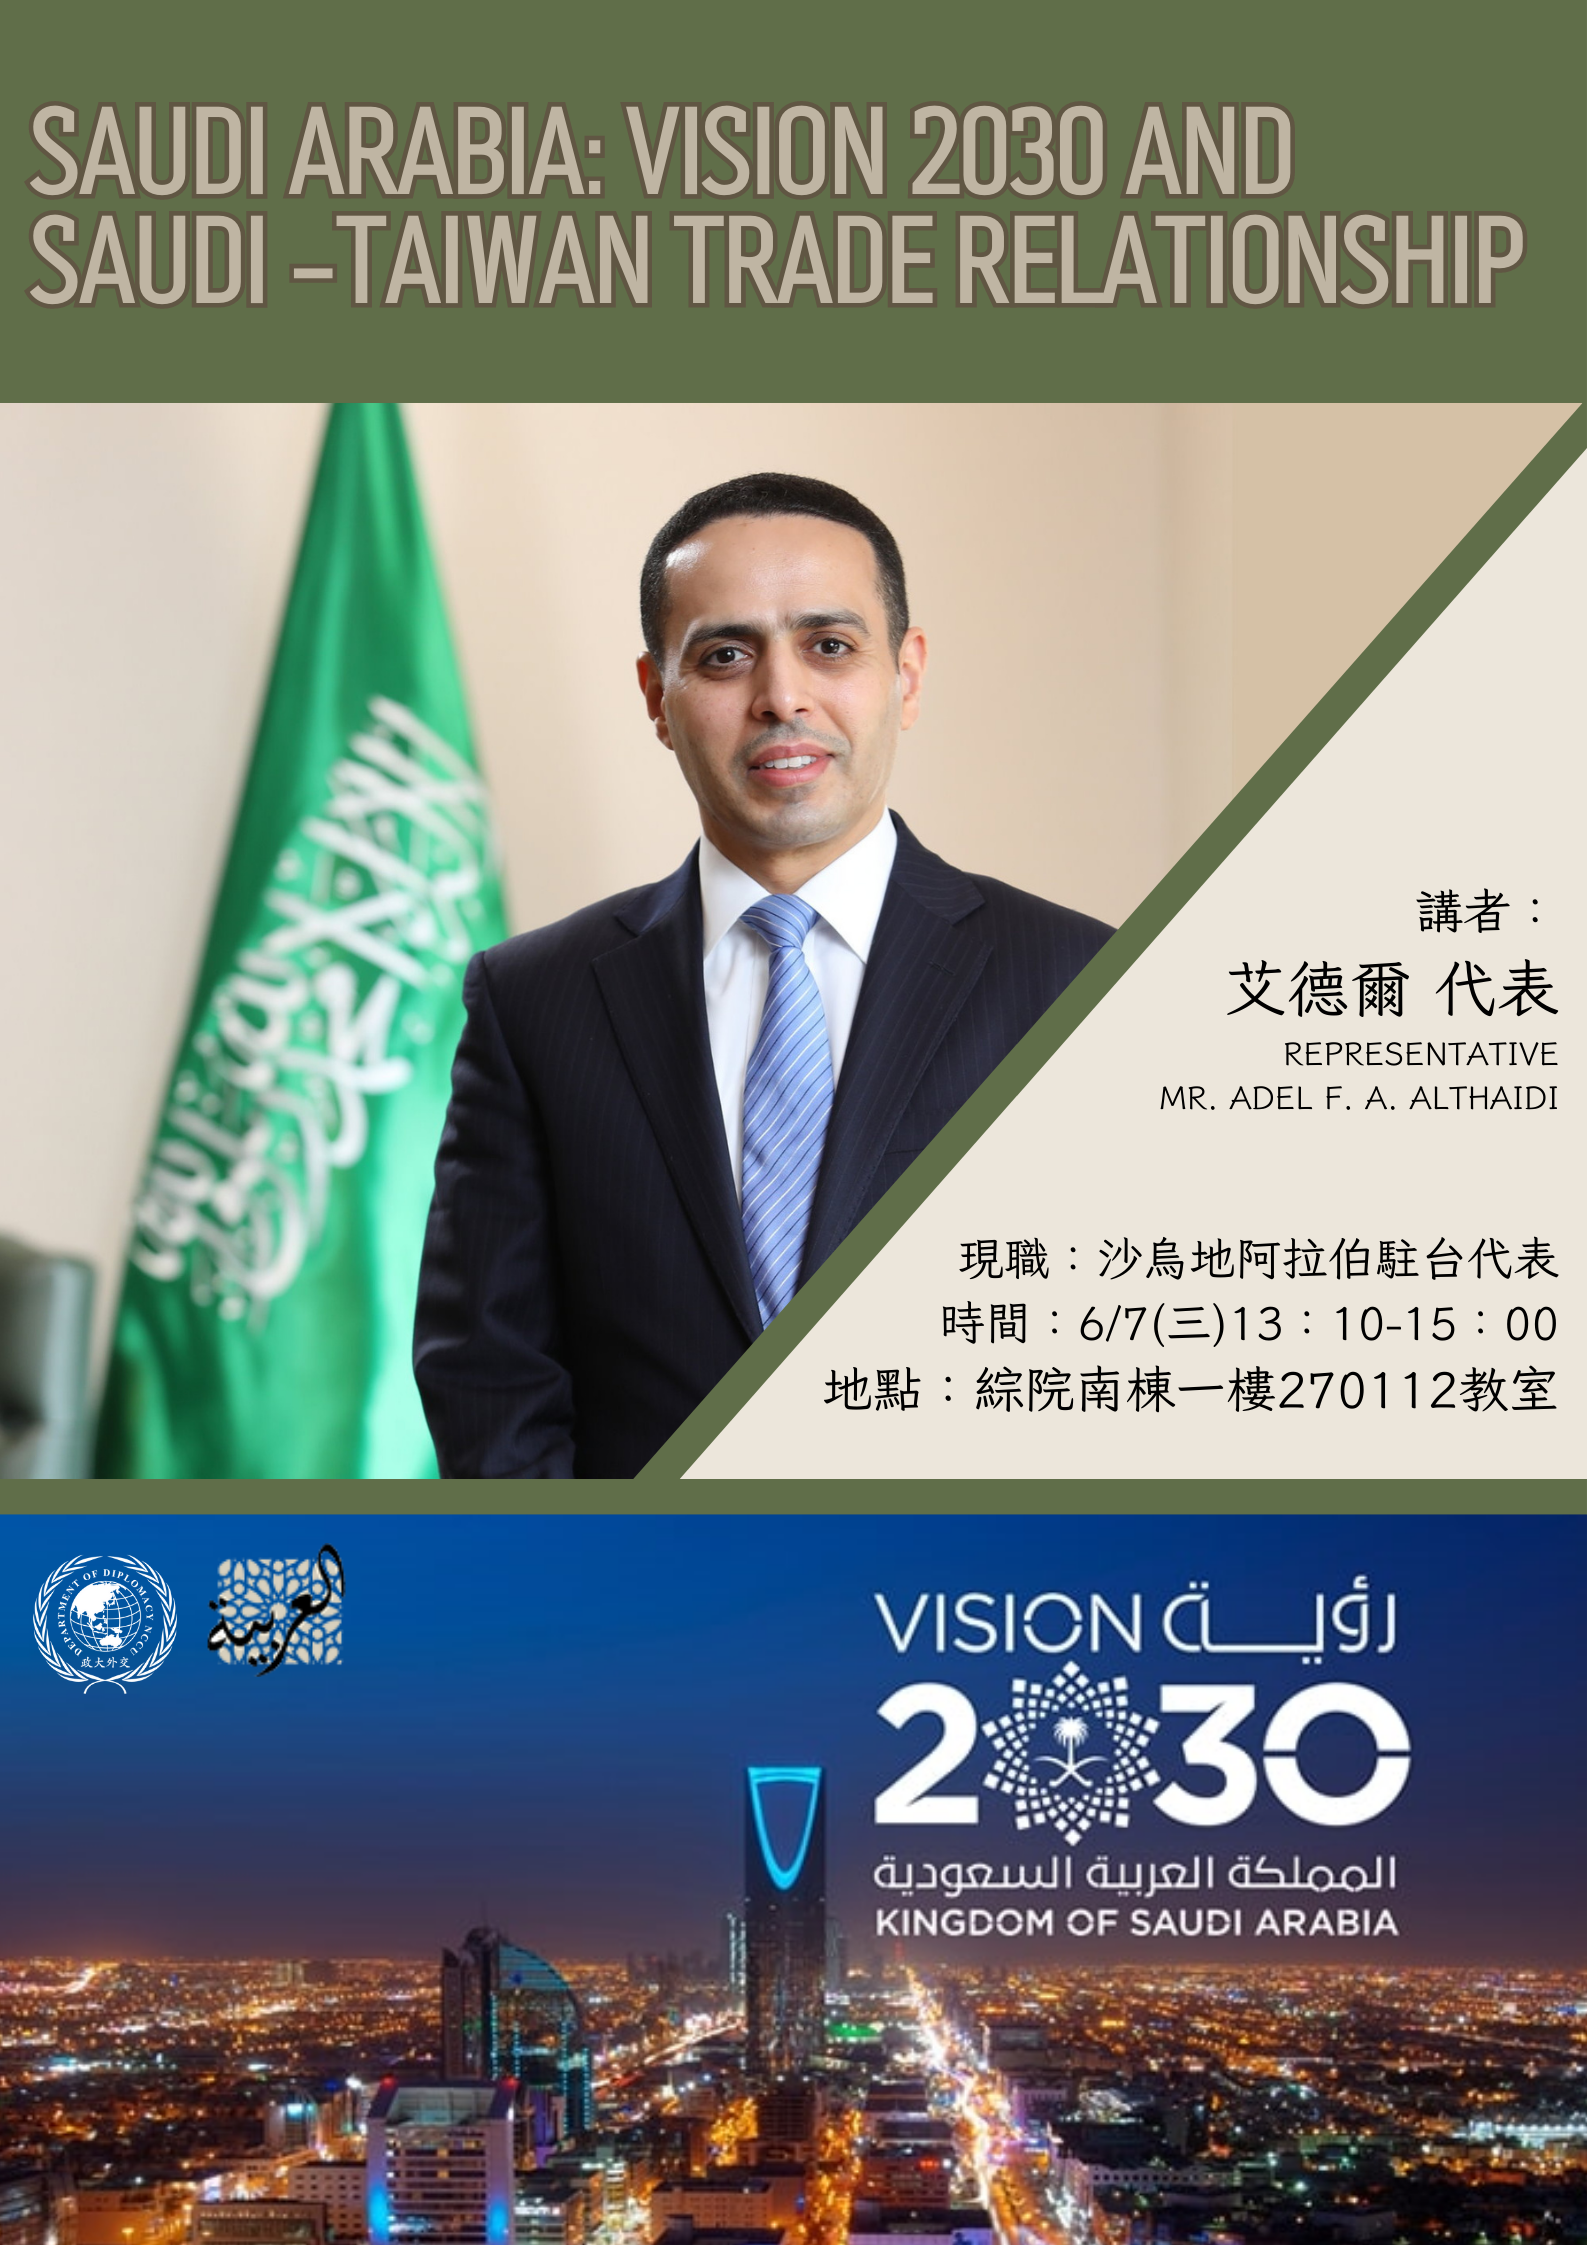 敬邀出席沙烏地阿拉伯駐台代表演講–【Saudi Arabia: Vision 2030 and Saudi-Taiwan Trade Relationship】